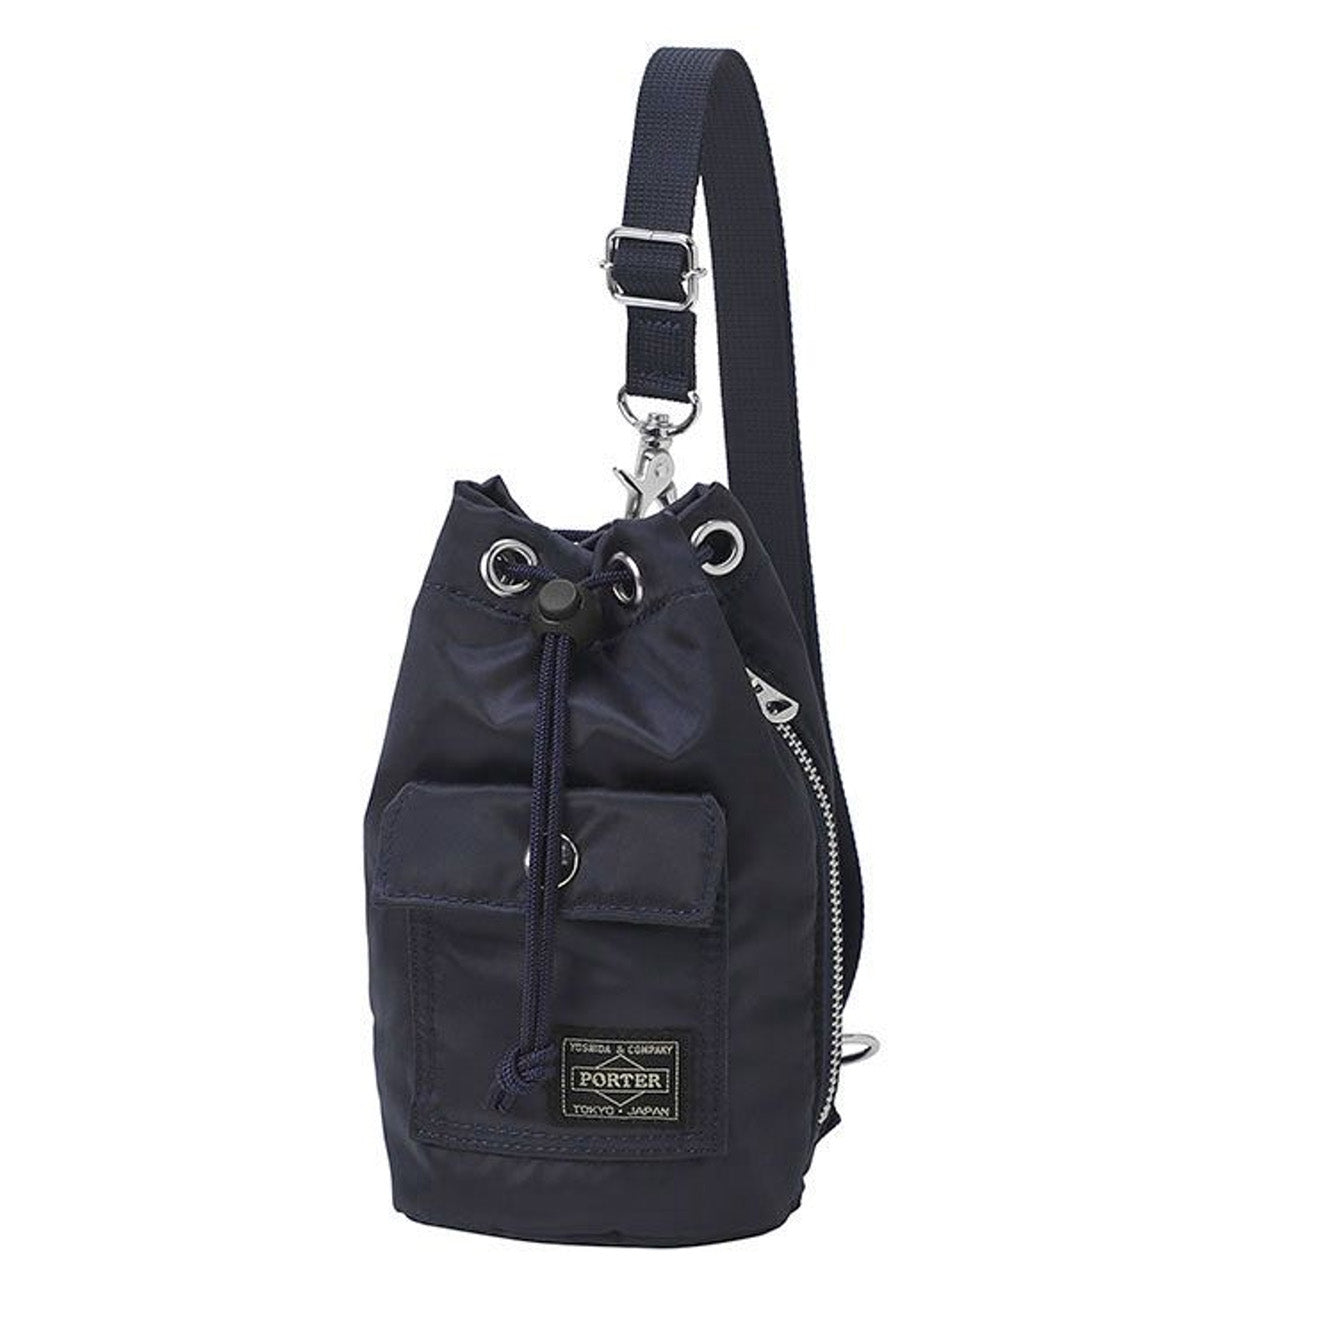 The Mini Sling Backpack -Handmade Leather Backpack and Mini Bucket Bag